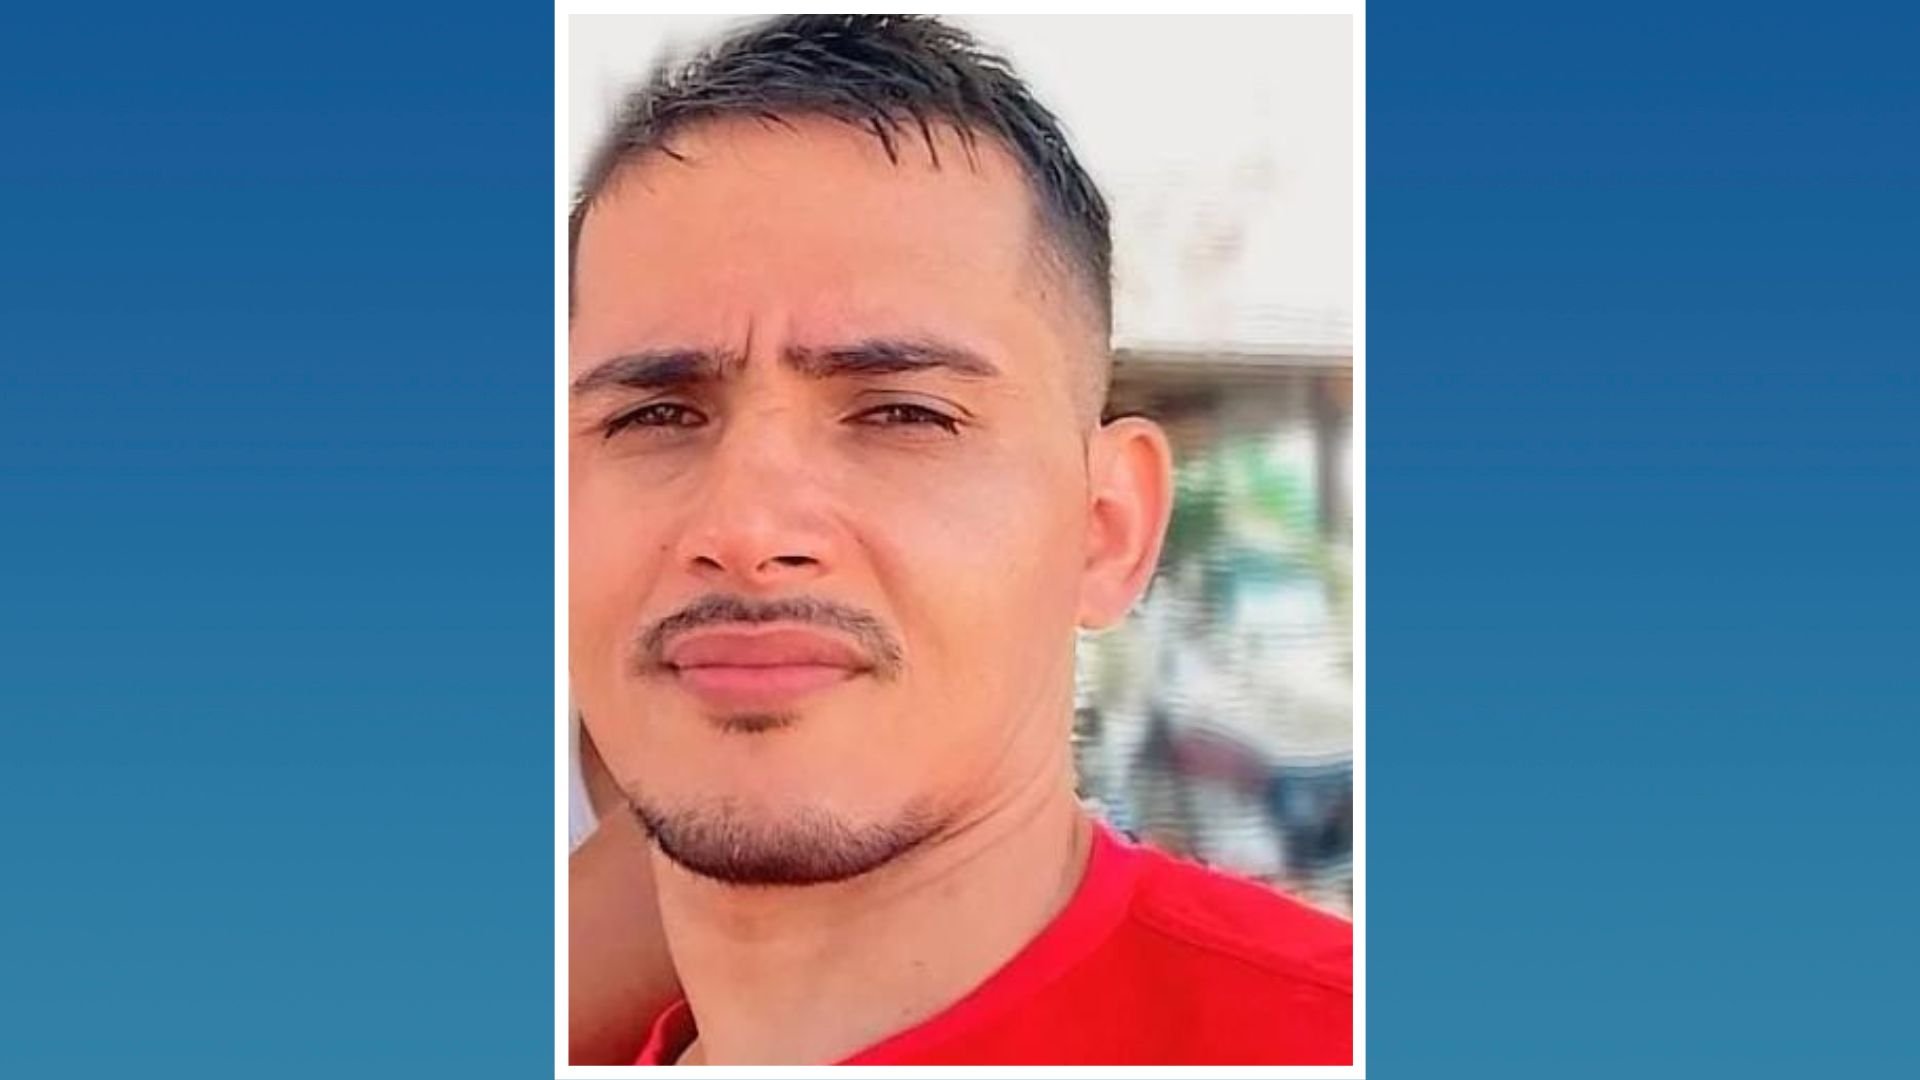 Rafael de Souza Conceição, de 33 anos, está desaparecido desde a última sexta-feira (24); ele saiu de casa após uma discussão com a esposa, levando apenas algumas peças de roupa